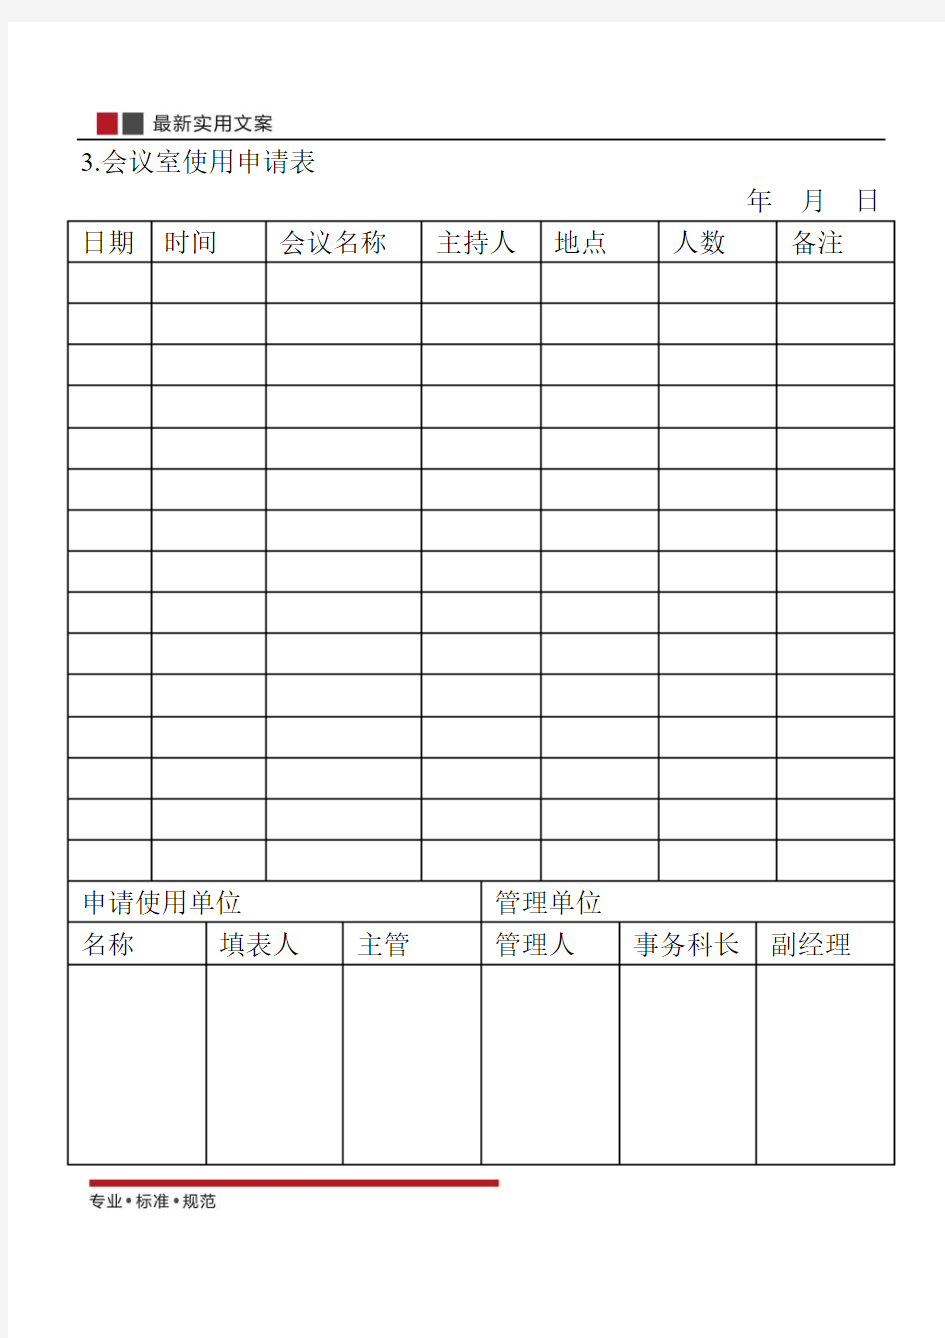 【范本】会议室使用申请表(标准模板)